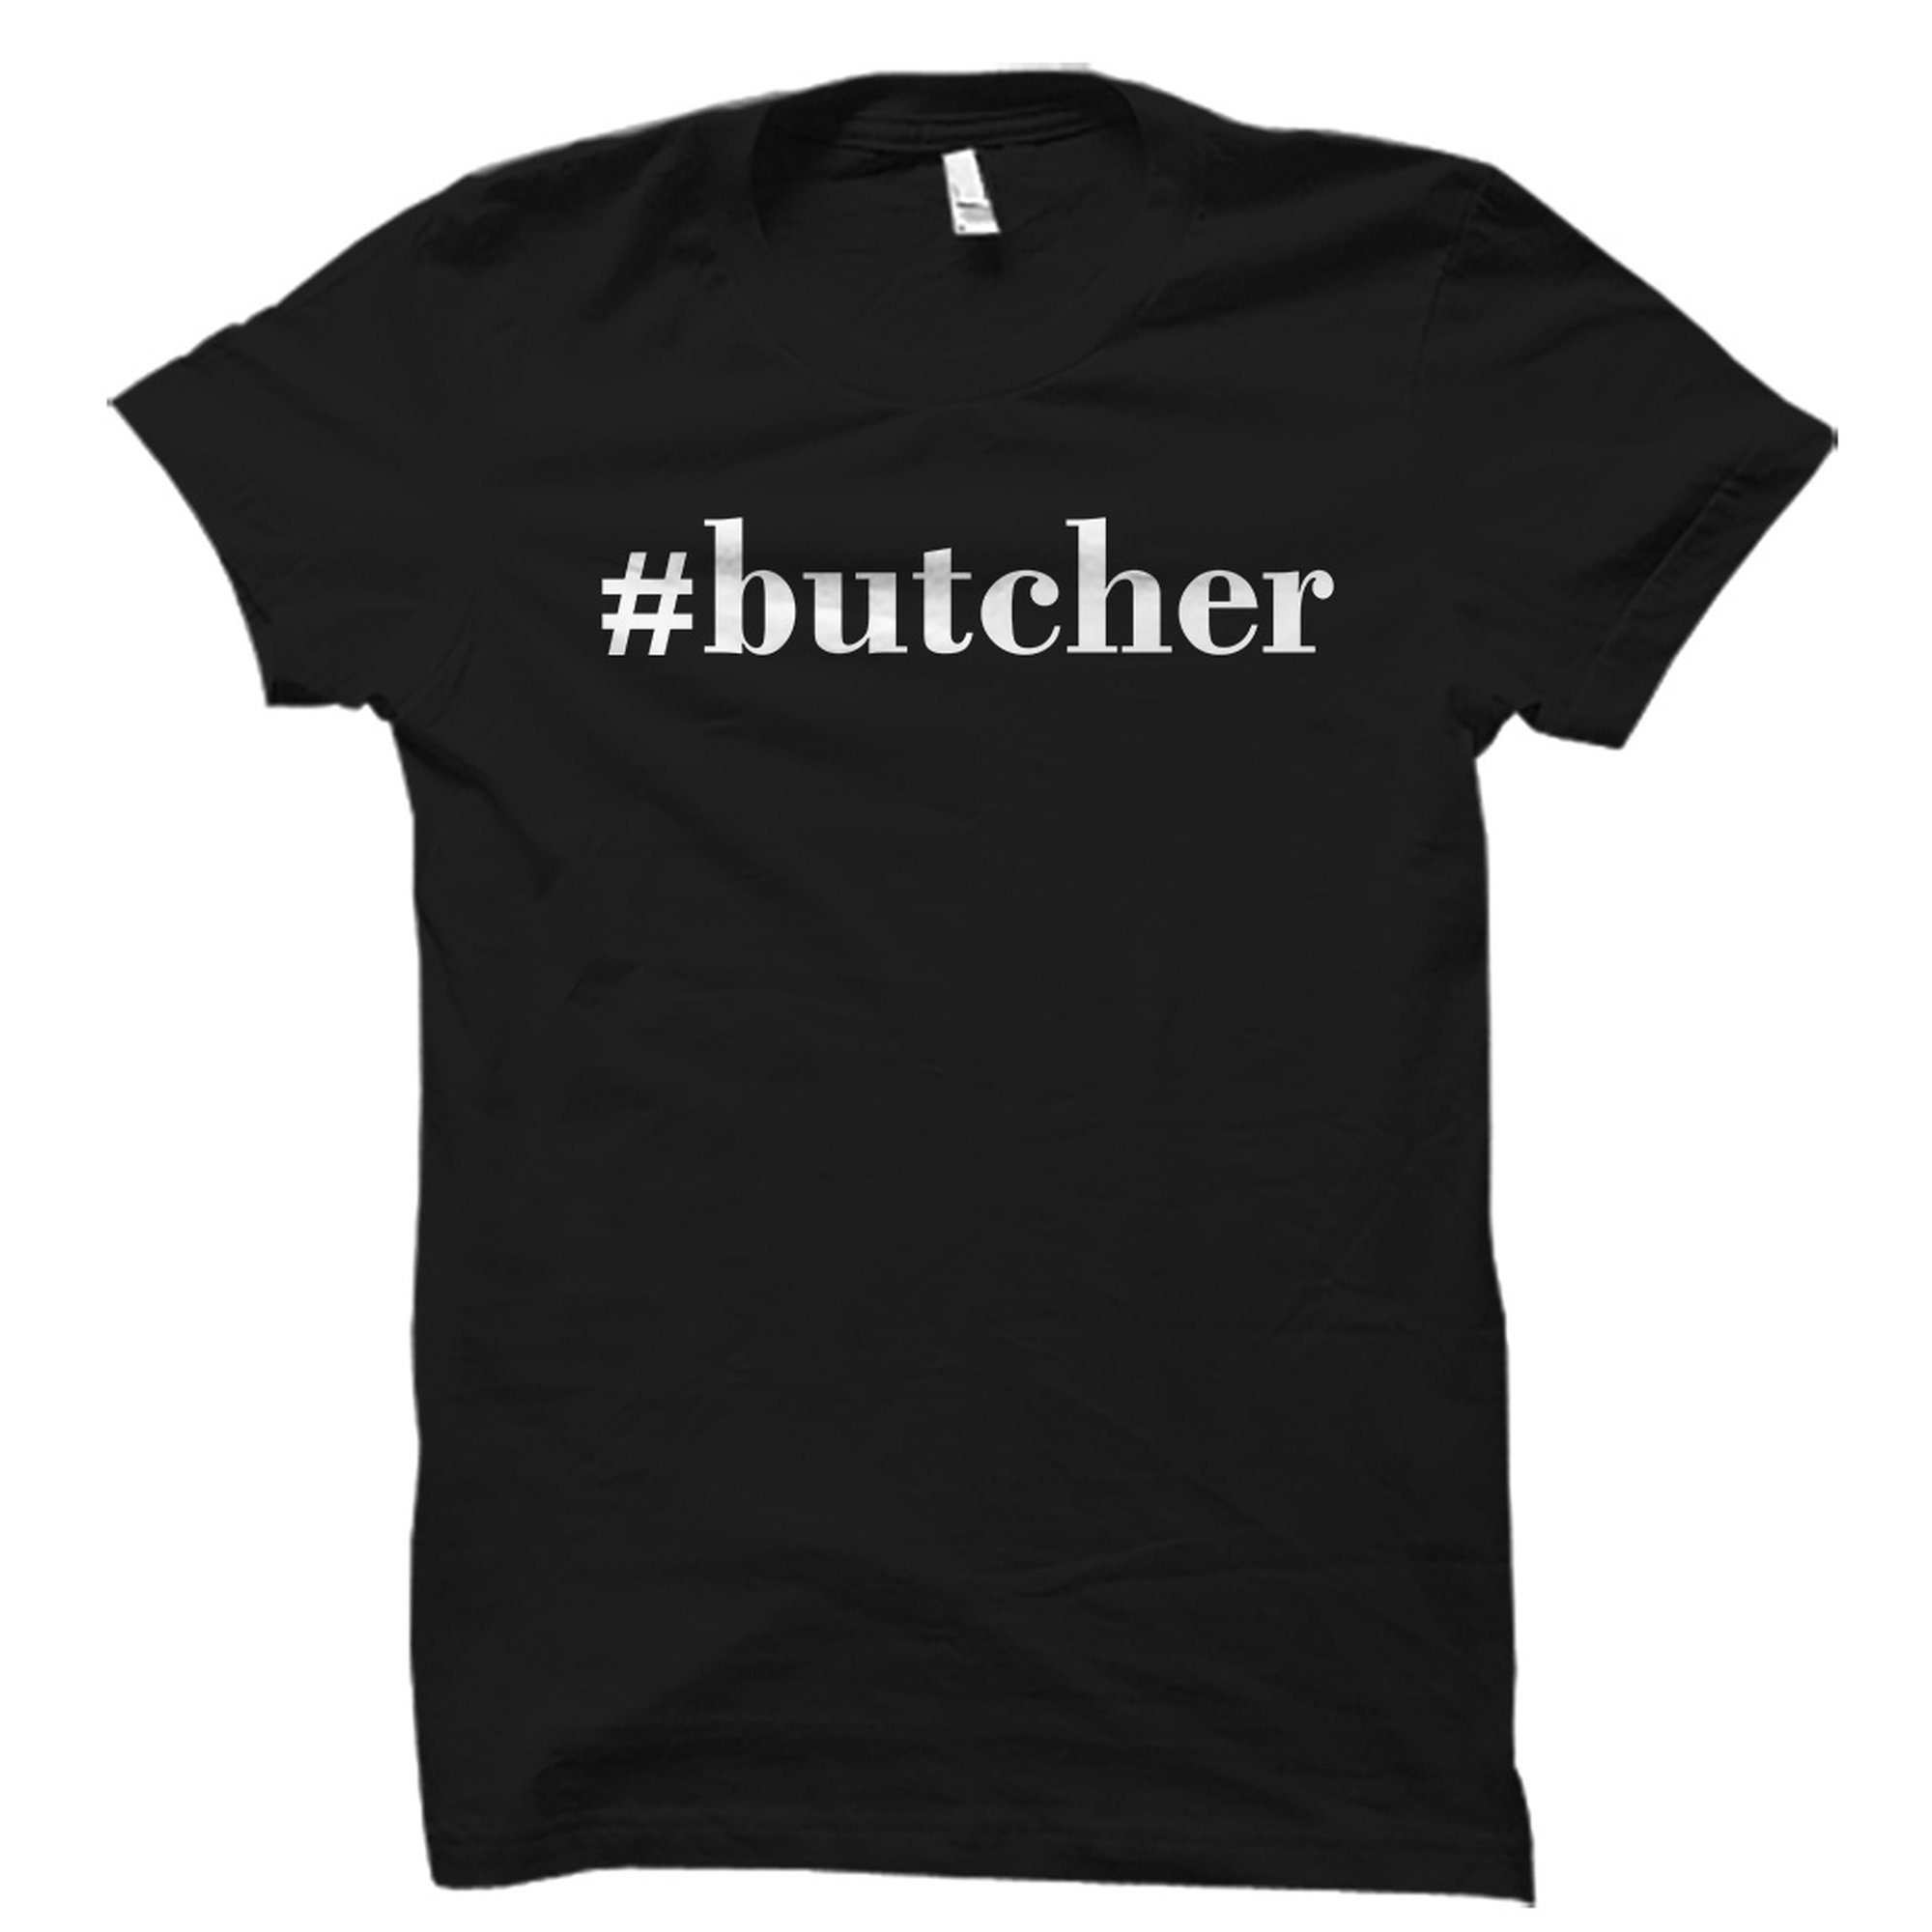 Butcher Gift, Butcher Shirt, Meat Shop Owner Gift, Meat Shop Owner Shirt, Meat Merchant Gift, Meat Merchant Shirt, Butcher Shop #OS2478